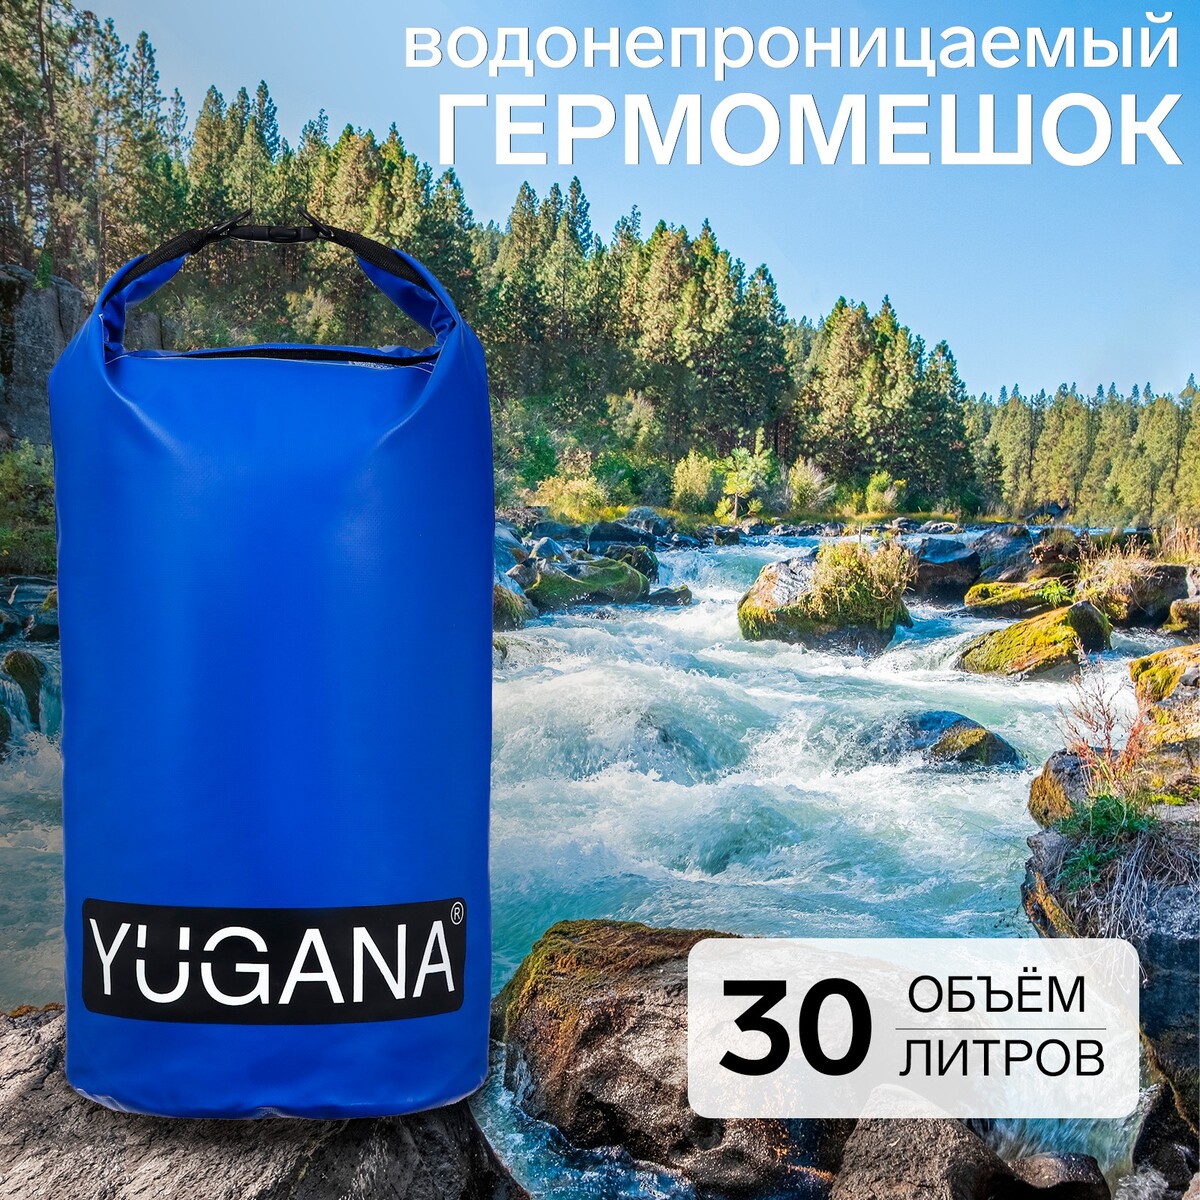 фото Гермомешок yugana, пвх, водонепроницаемый 30 литров, два ремня, синий